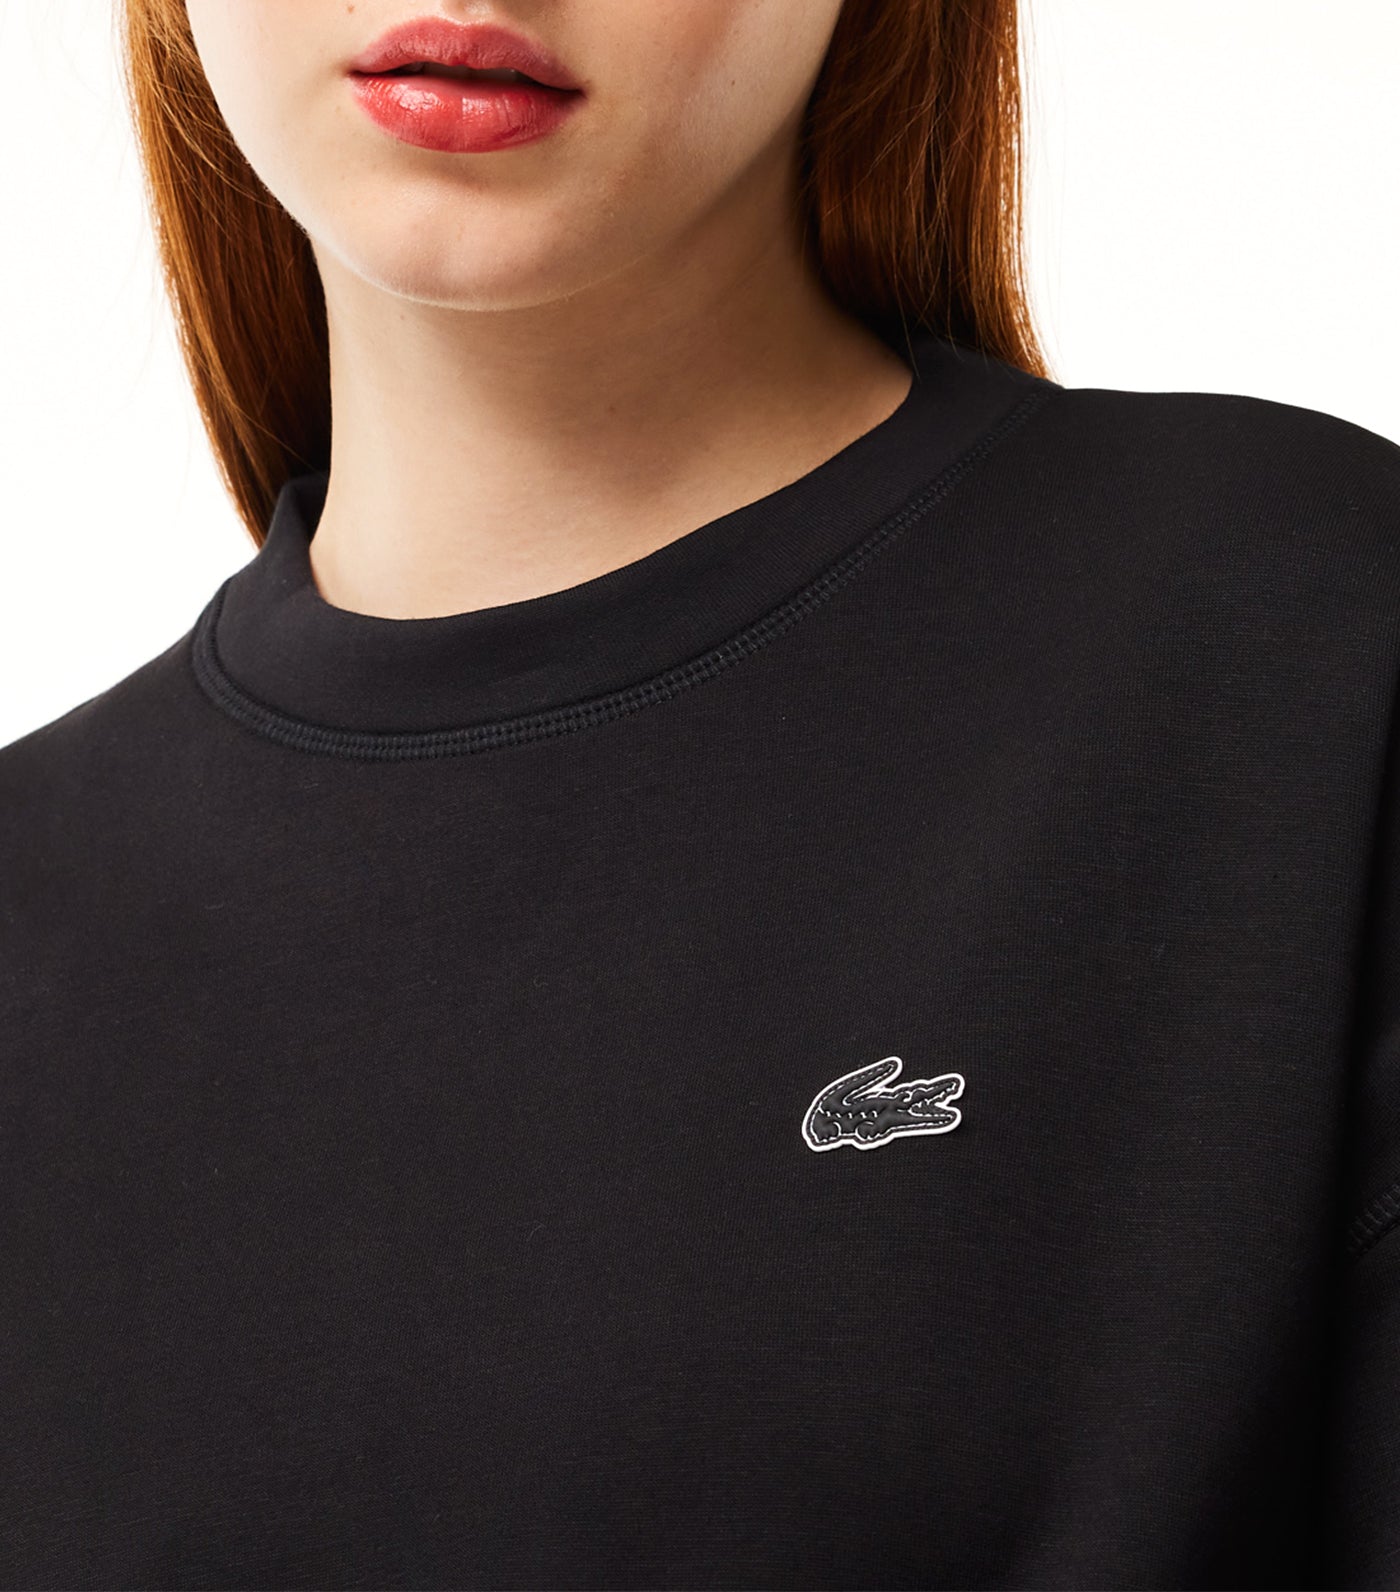 Women’s Lacoste Print Back Sweatshirt Black